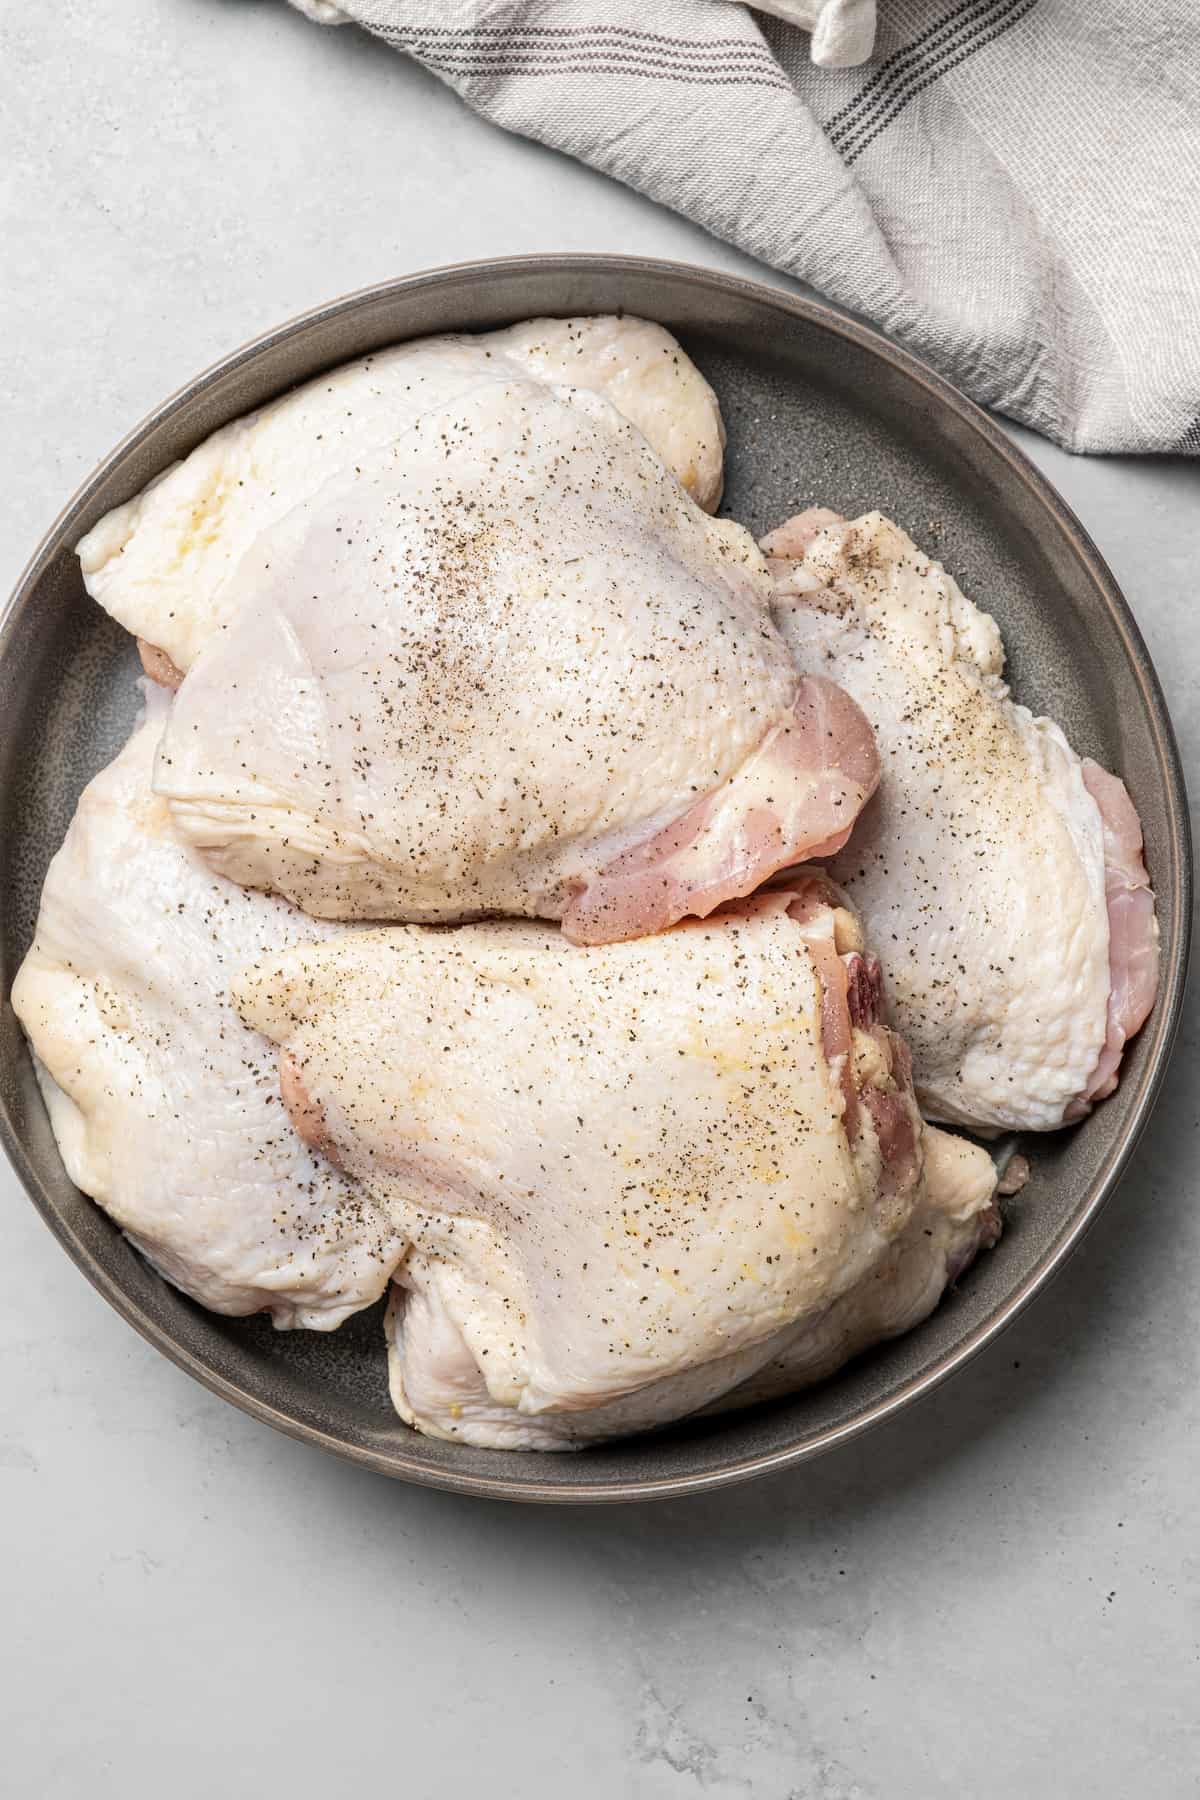 Bone-in skin-on chicken thighs sprinkled with seasonings.